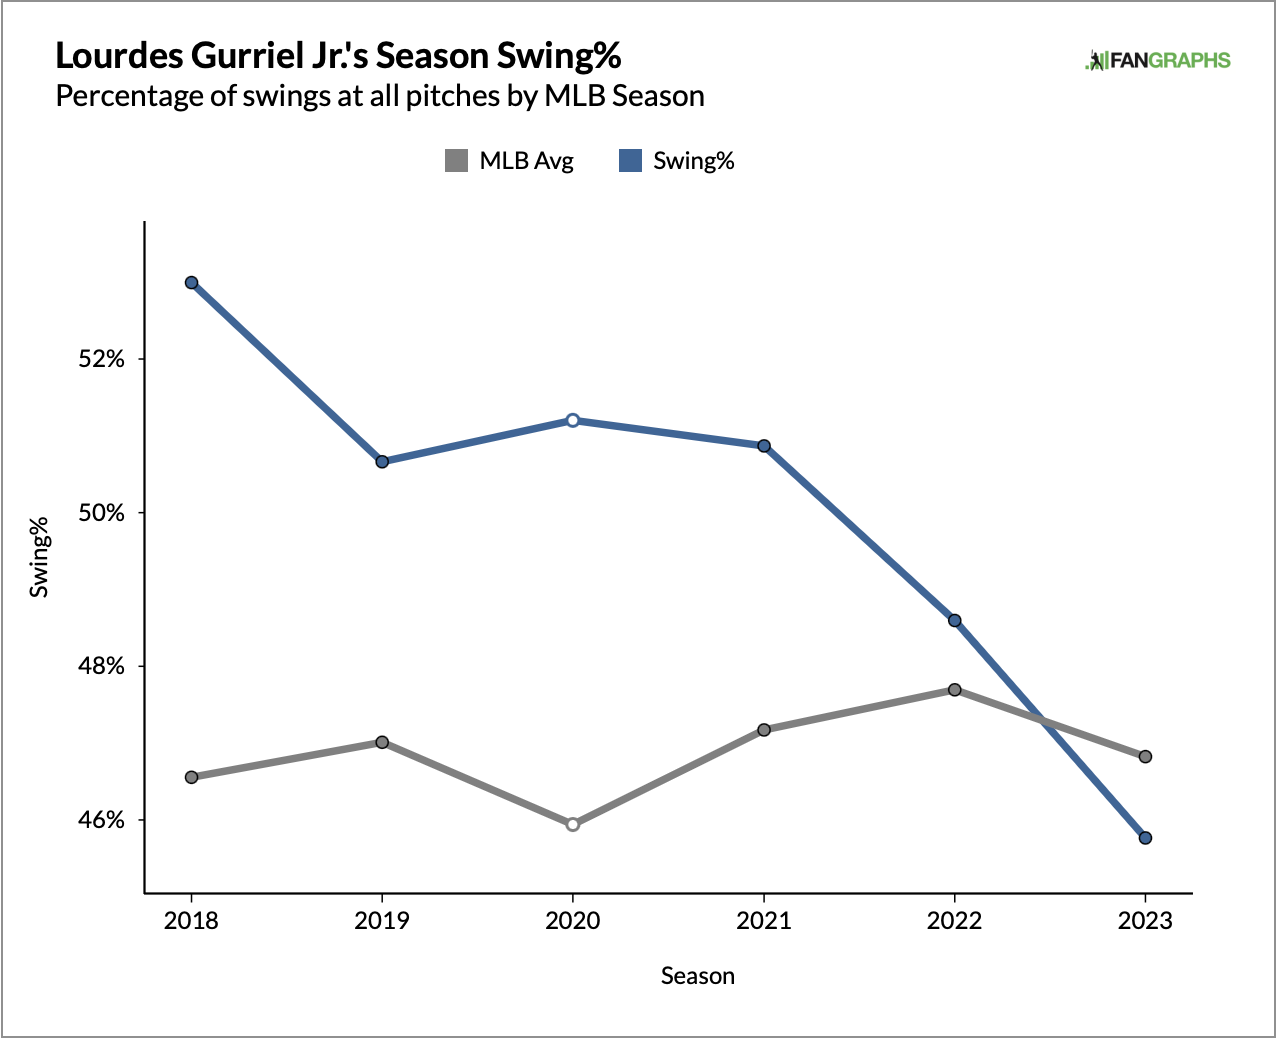 Lourdes Gurriel Jr. swing percentage stats by season